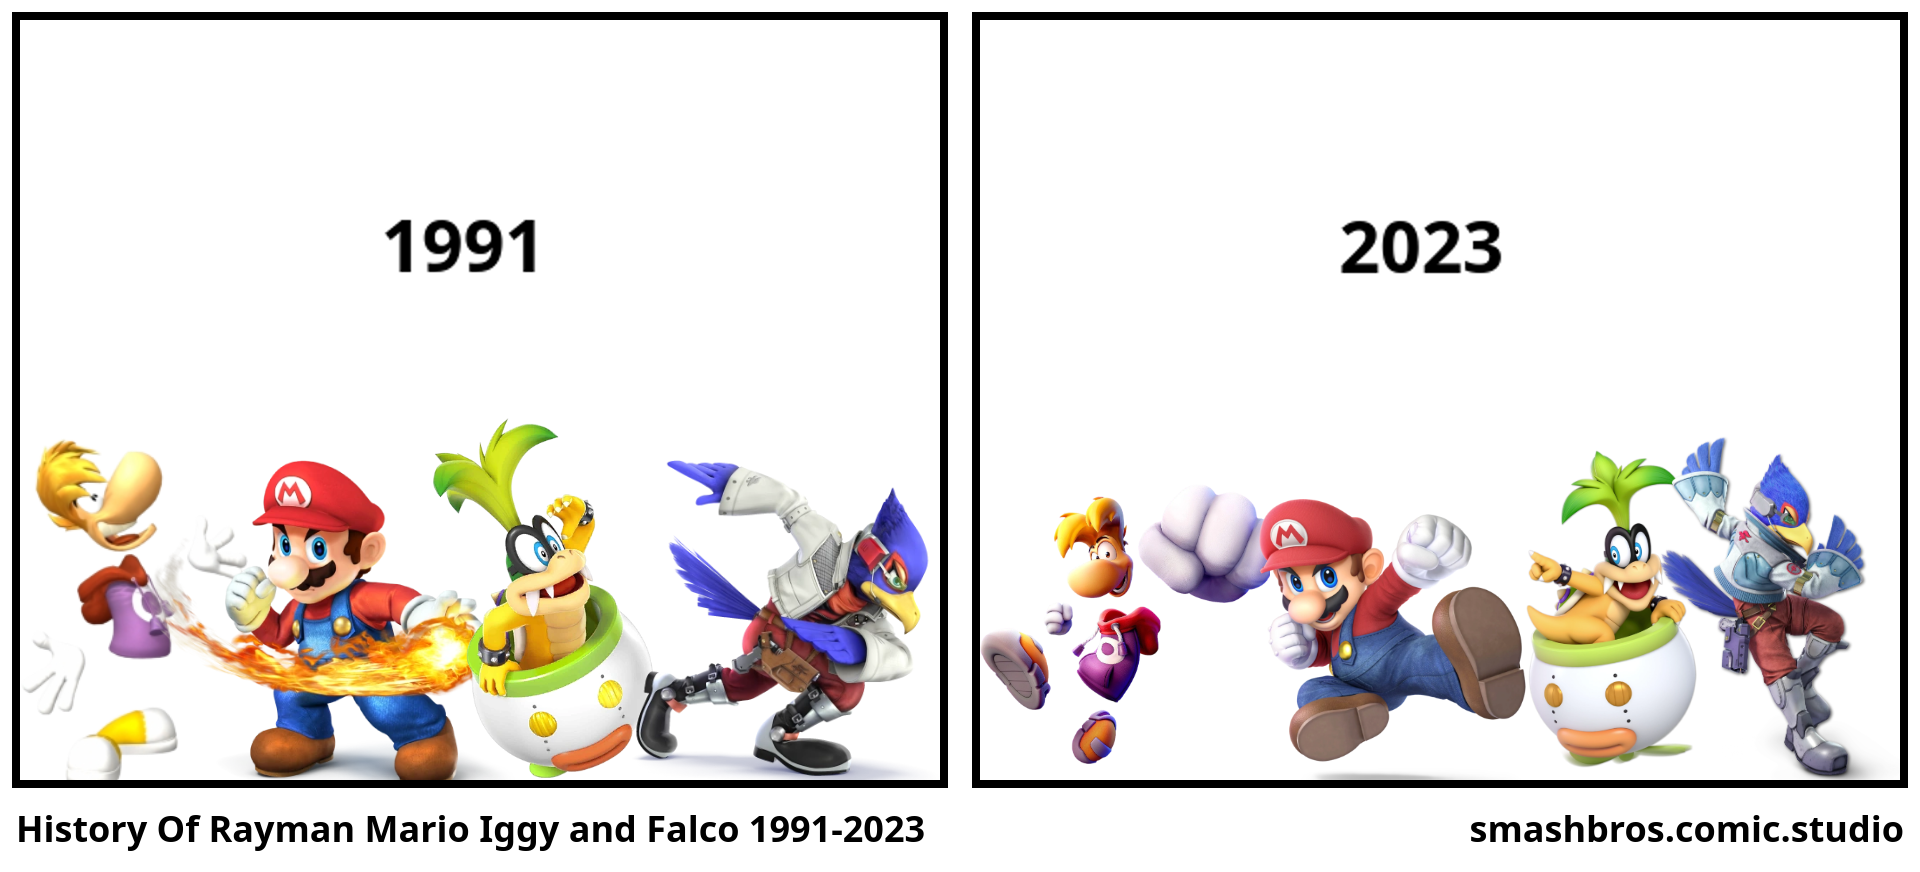 History Of Rayman Mario Iggy and Falco 1991-2023